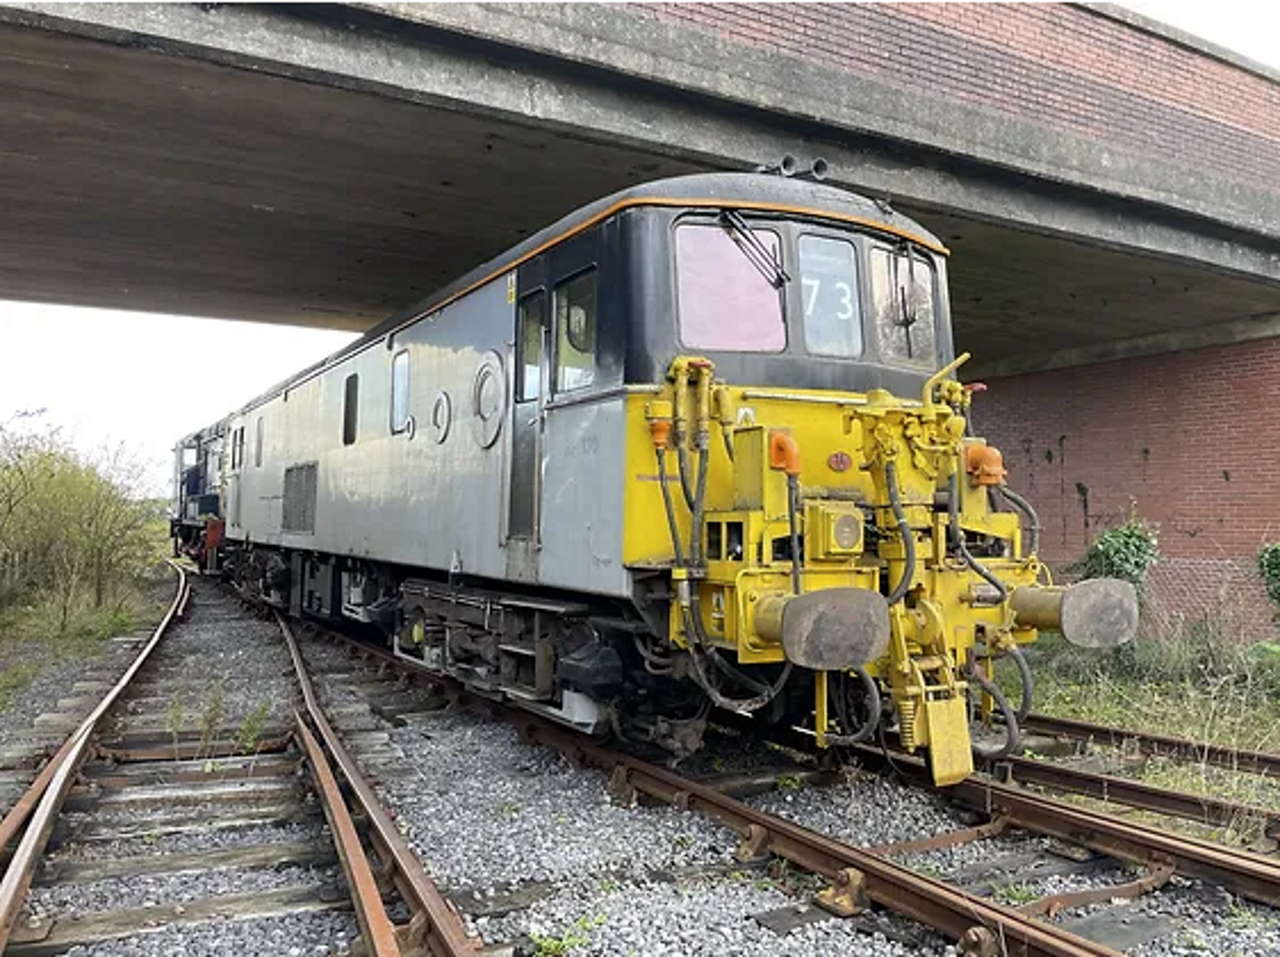 Class 73 locomotive arrives at the Llanelli and Mynydd Mawr Railway